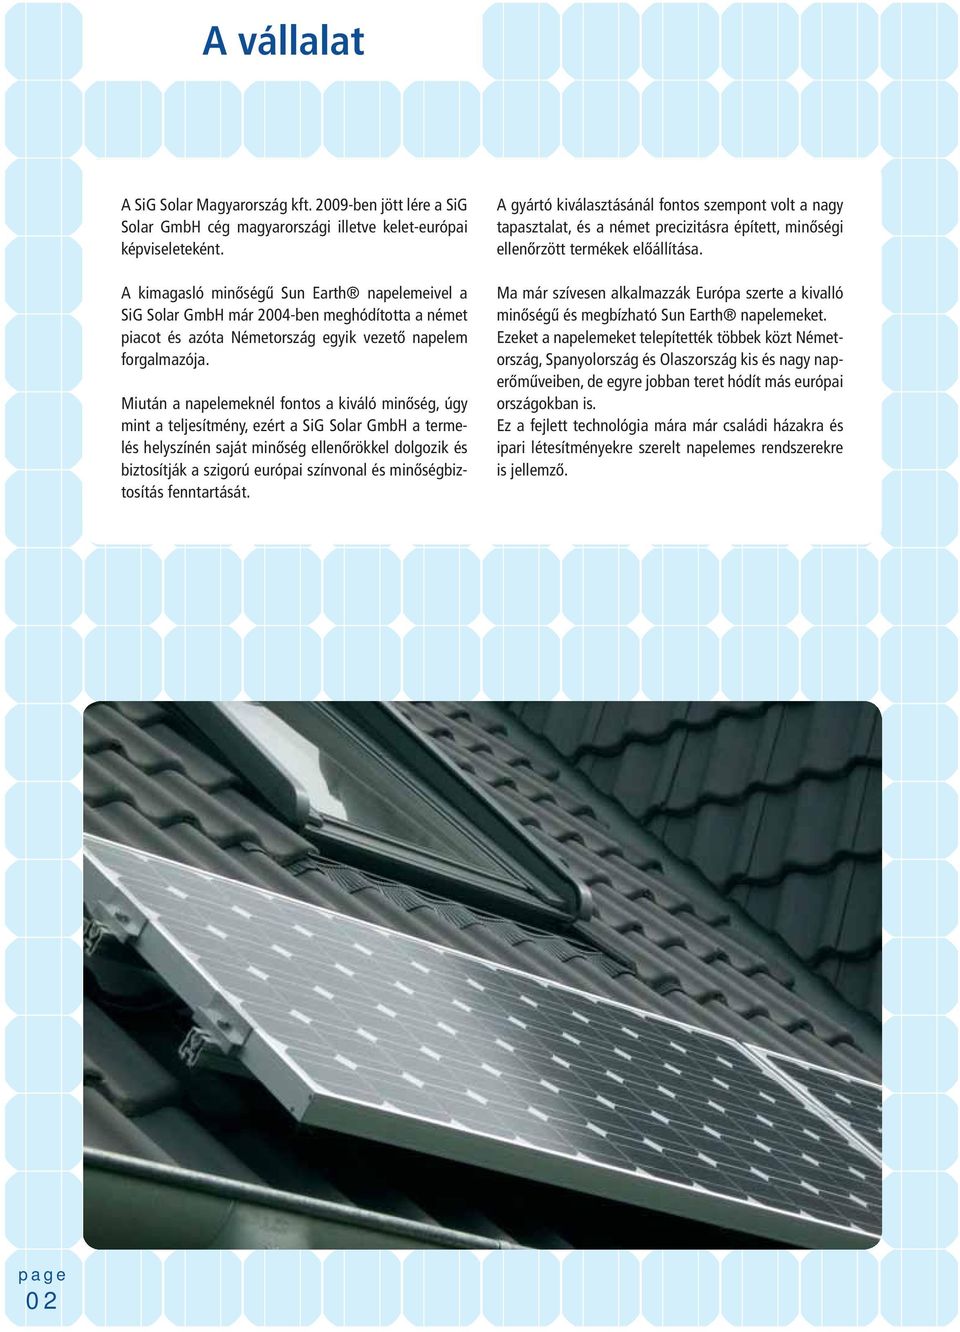 Miután a napelemeknél fontos a kiváló minőség, úgy mint a teljesítmény, ezért a SiG Solar GmbH a termelés helyszínén saját minőség ellenőrökkel dolgozik és biztosítják a szigorú európai színvonal és